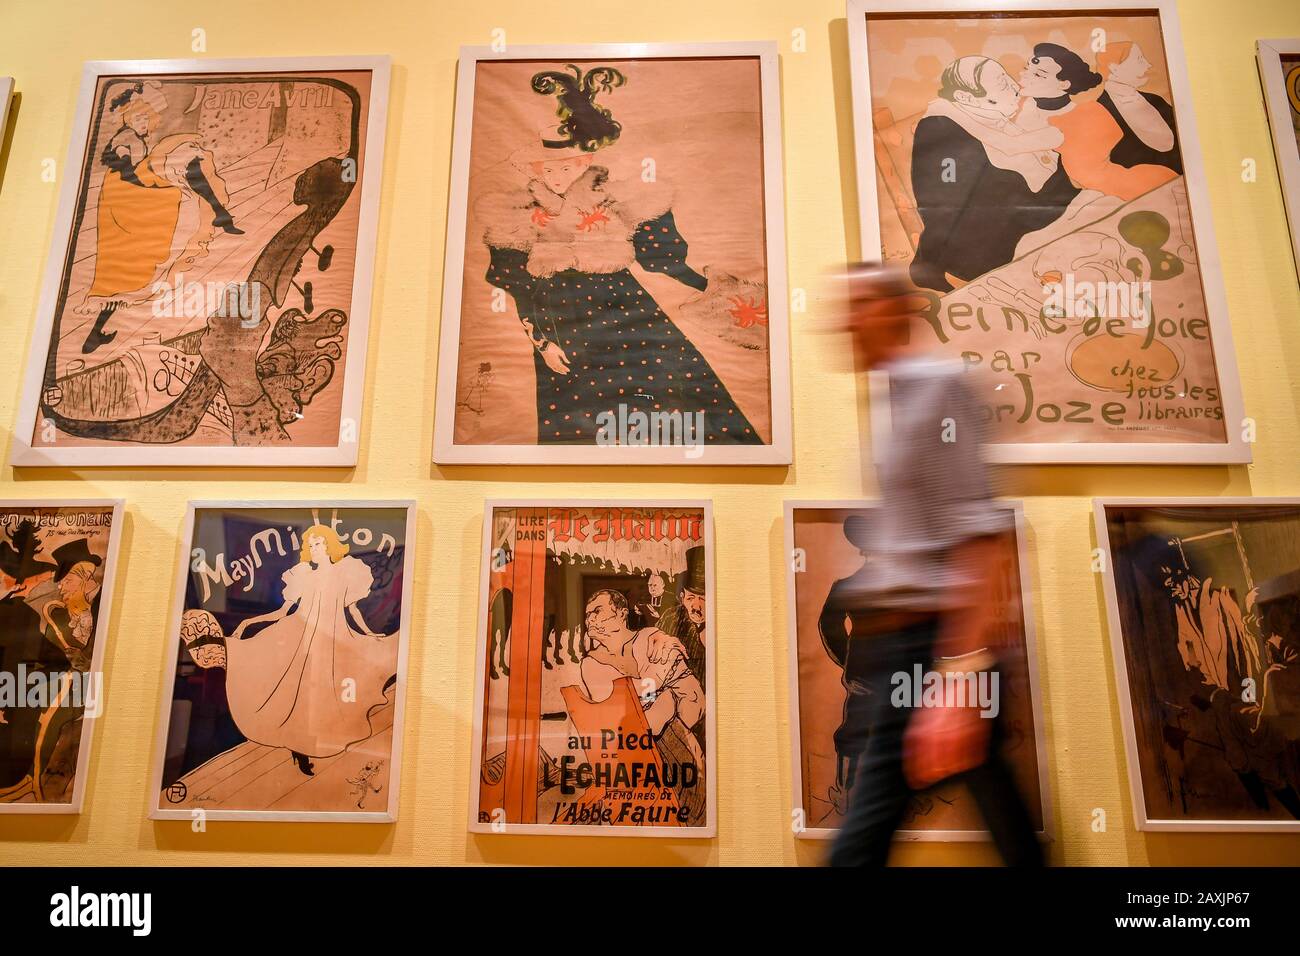 Le personnel de la galerie passe une collection d'œuvres d'art Toulouse-Lautrec lorsqu'ils viennent compléter l'exposition Toulouse-Lautrec et les maîtres de Montmartre à la Victoria Art Gallery, Bath, où une collection complète d'affiches Toulouse-Lautrec, dont beaucoup sont rares, sont exposées ensemble pour la première fois. Banque D'Images